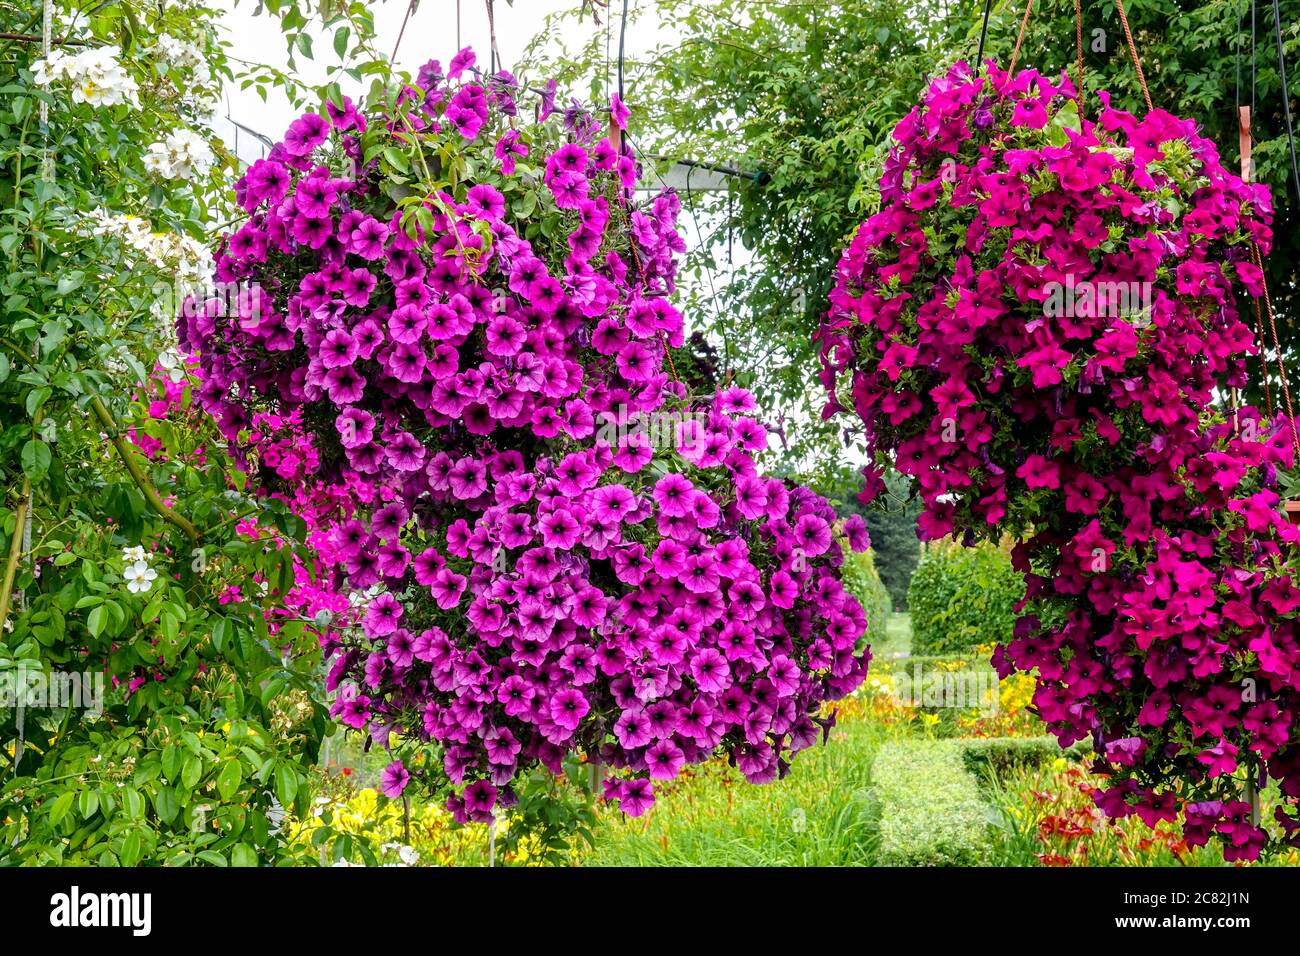 Rote violette Petunien, hängende Pflanzen im juli Garten Stockfoto